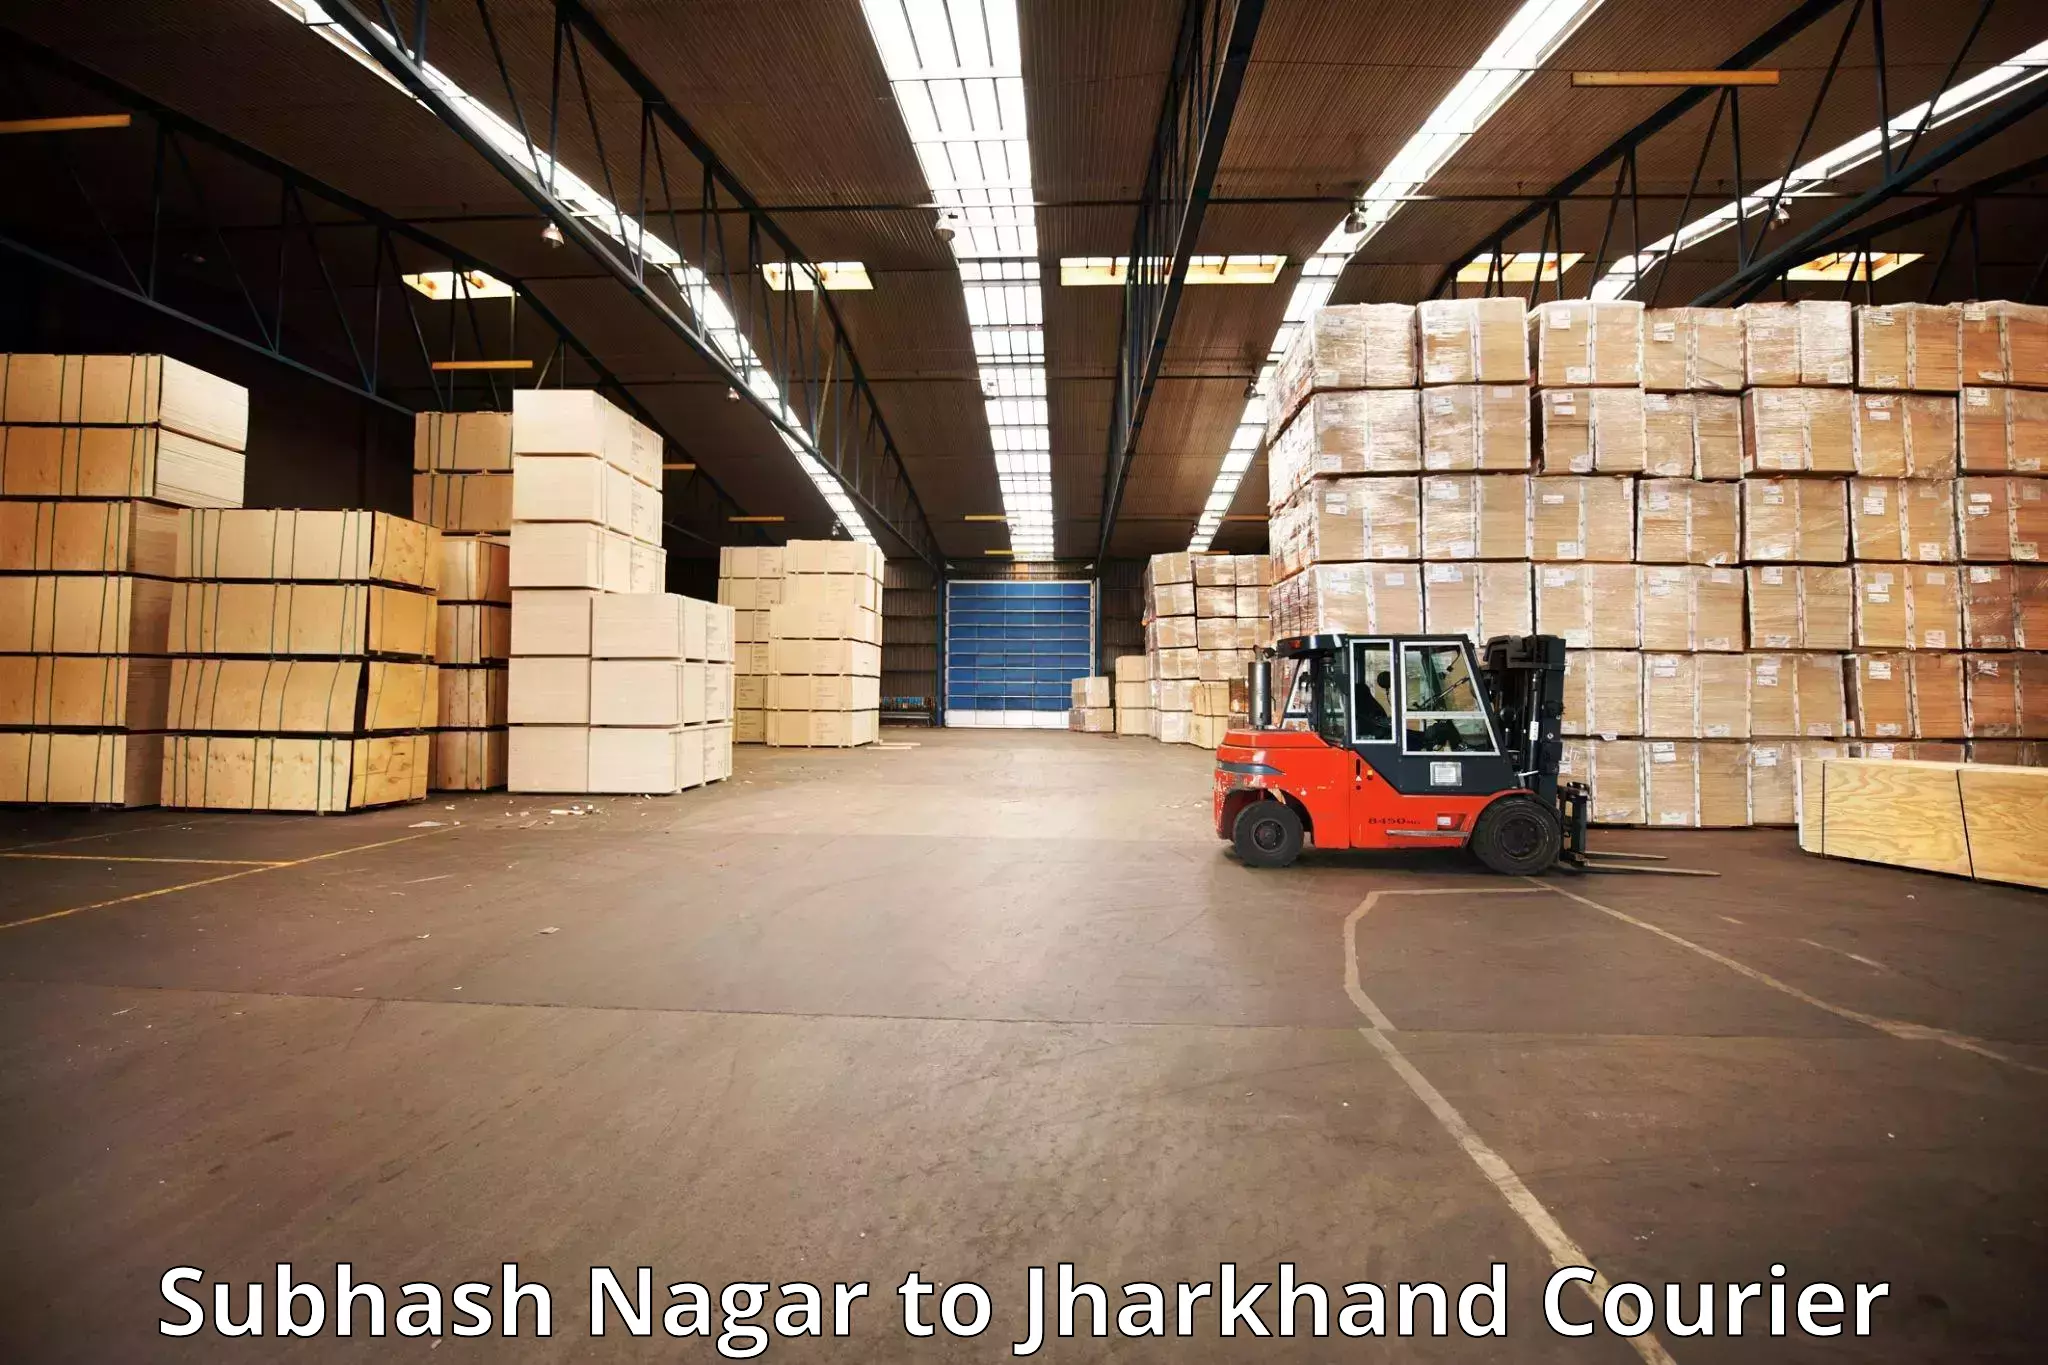 Baggage transport management Subhash Nagar to IIT Dhanbad